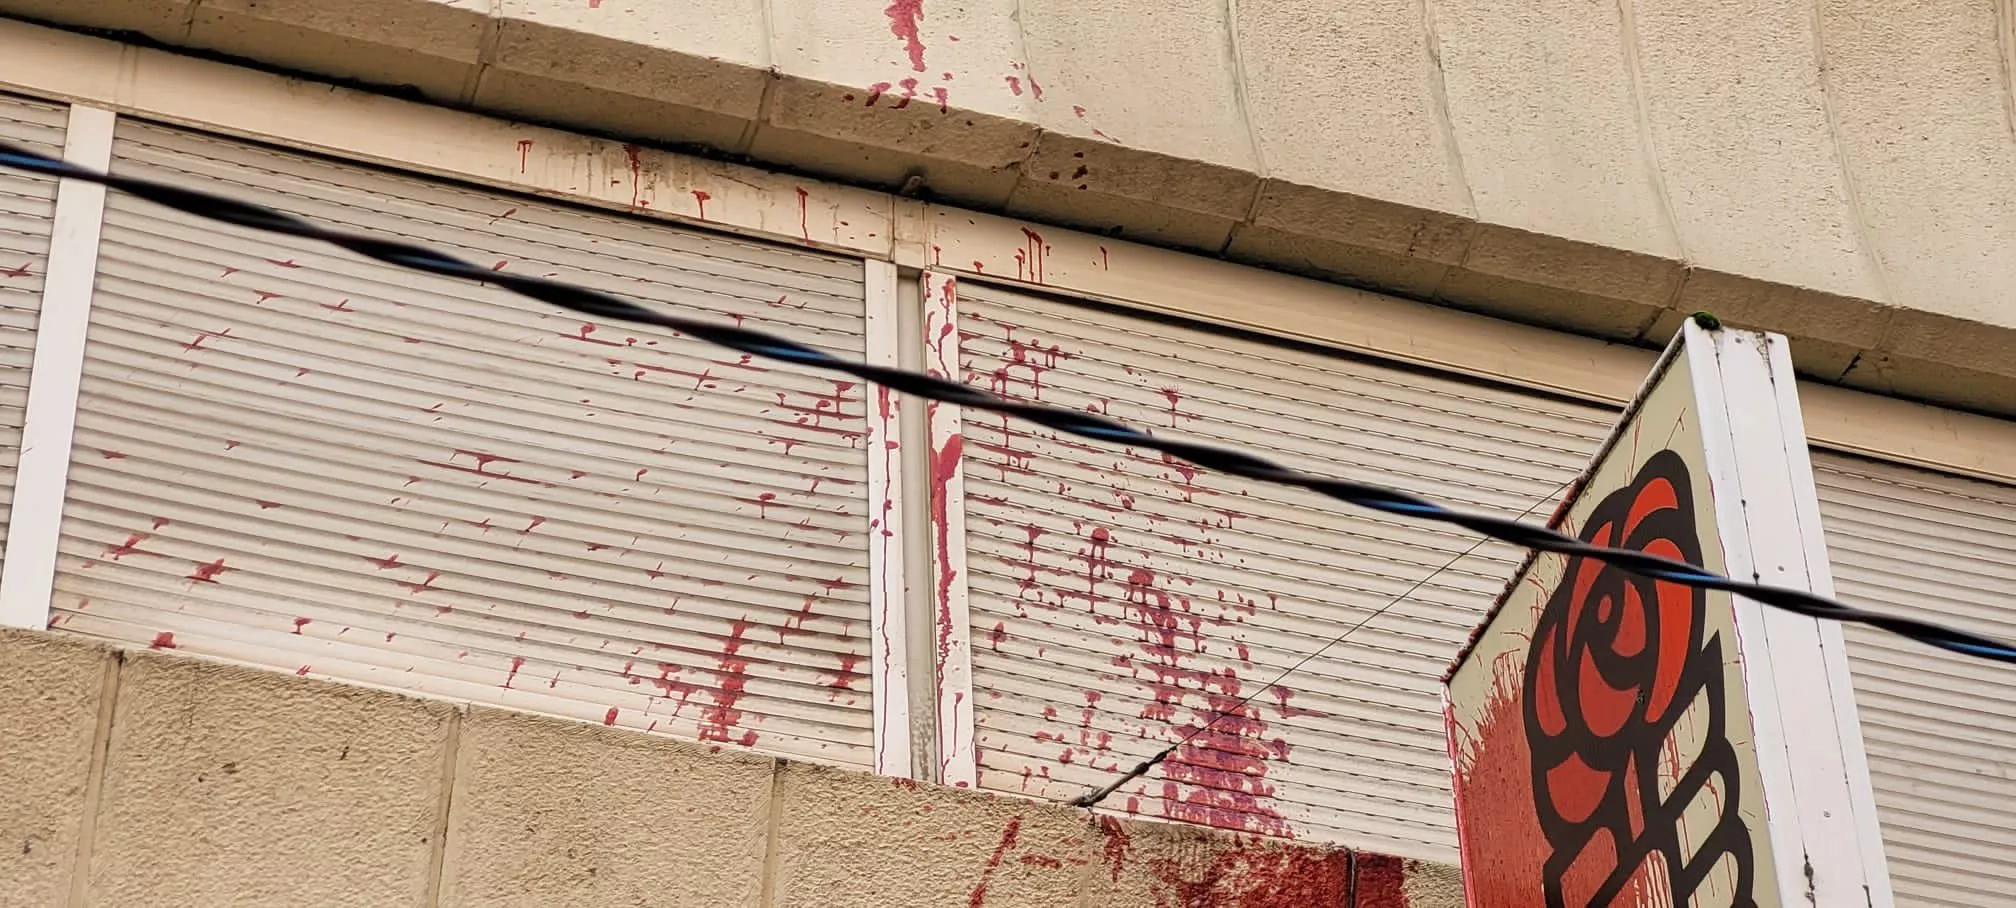 Sede del PSOE de Ponferrada vandalizada con pintura roja 1